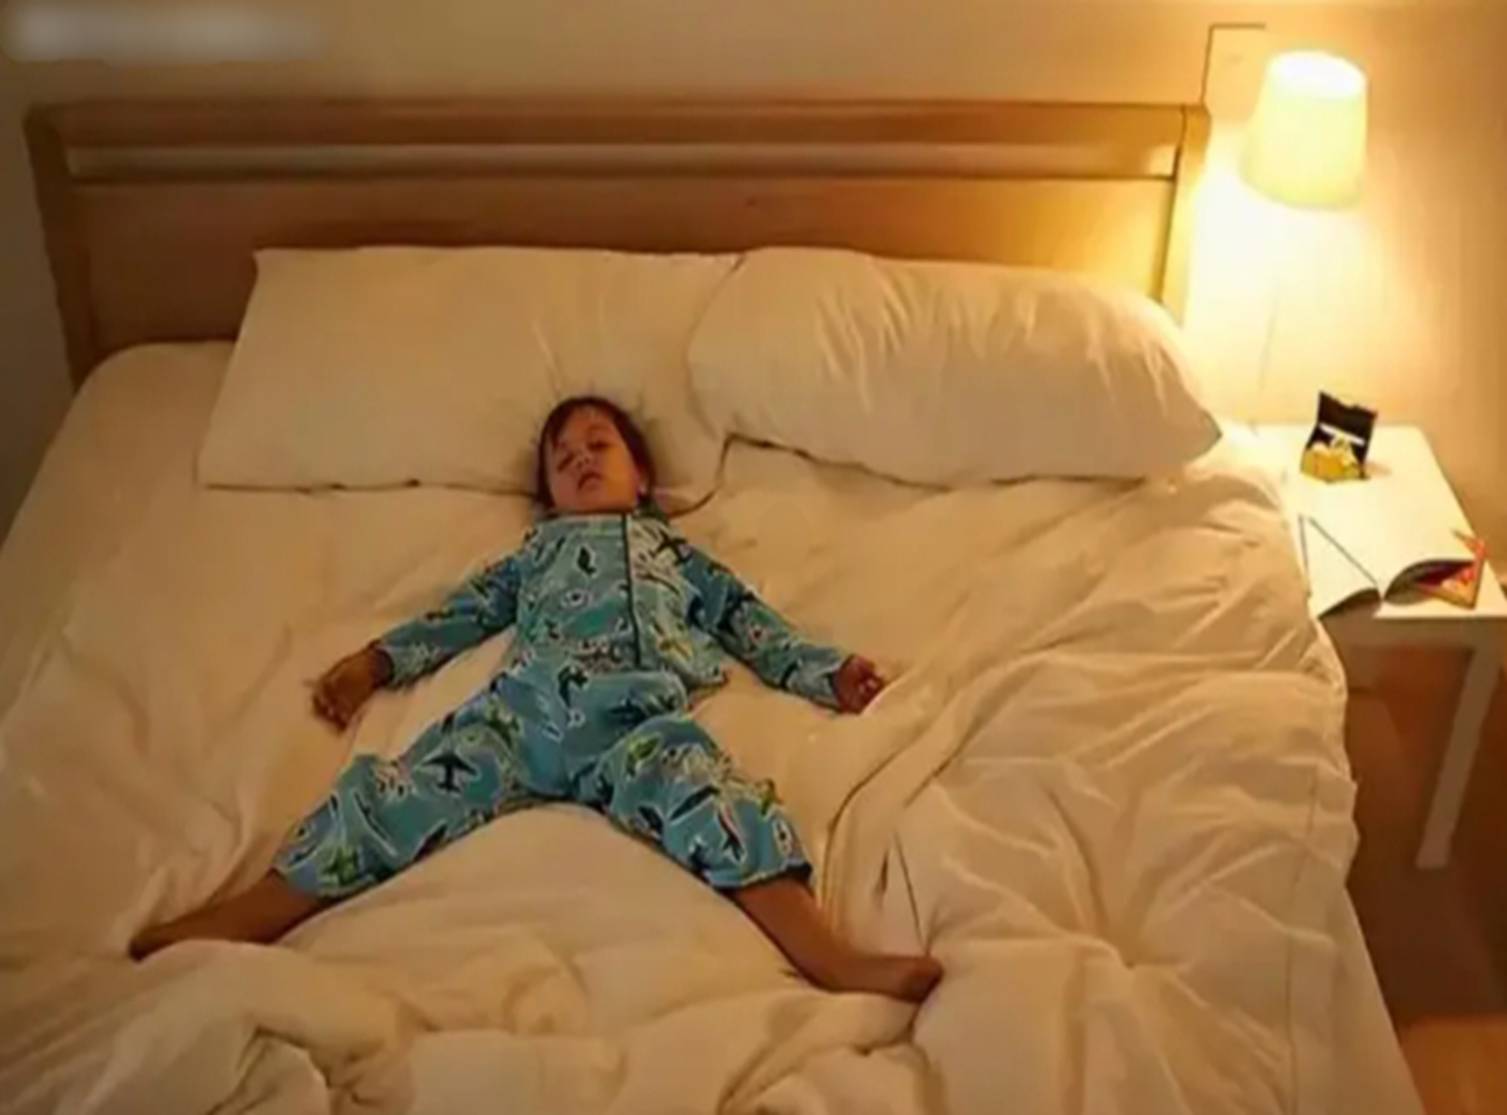 Nghiên cứu tâm lý phát hiện: Những đứa trẻ thông minh thường ngủ tư thế này ngay từ nhỏ-1